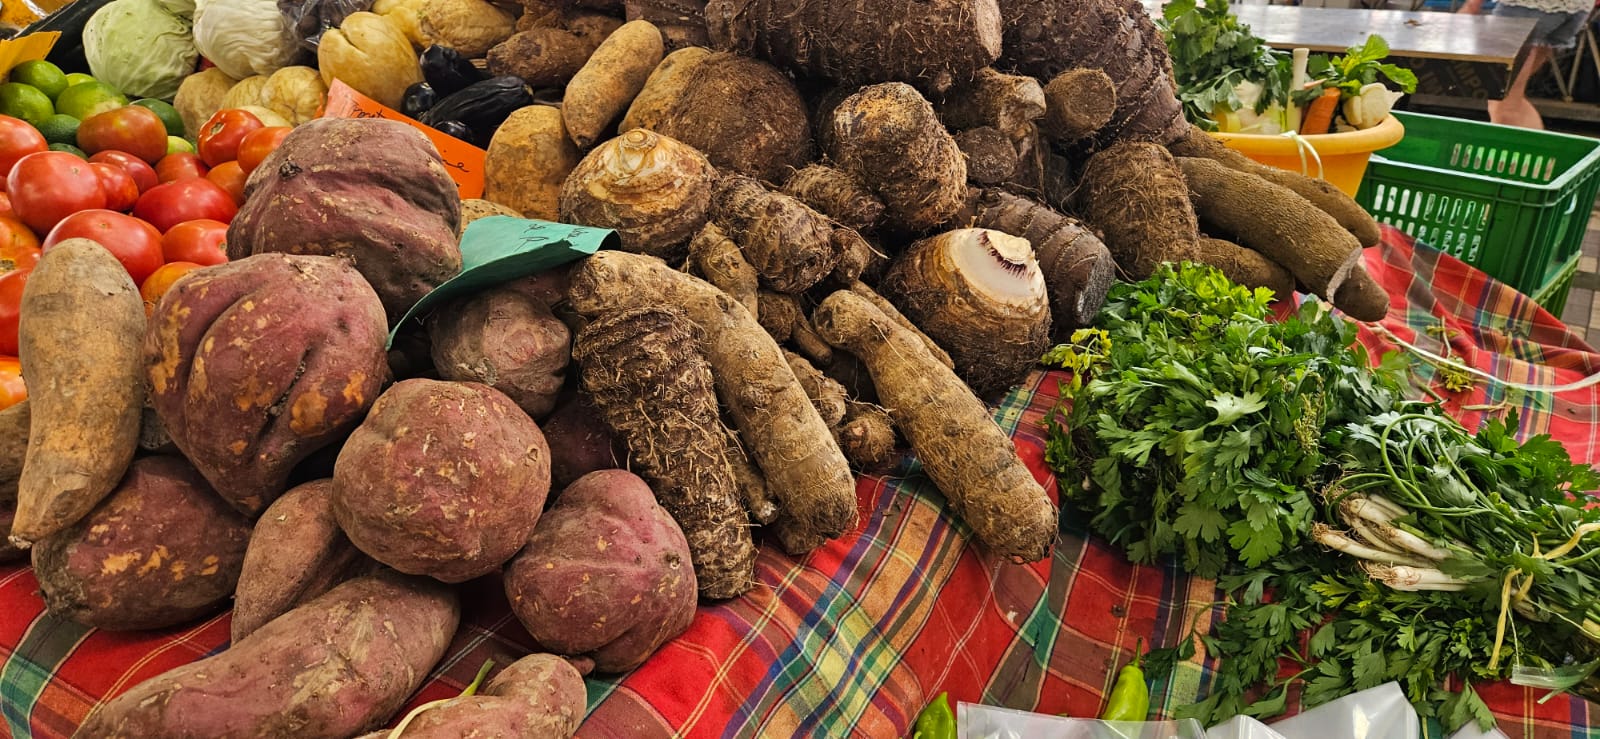     Au marché de Fort-de-France, la ruée vers les légumes pour la préparation des accras 

